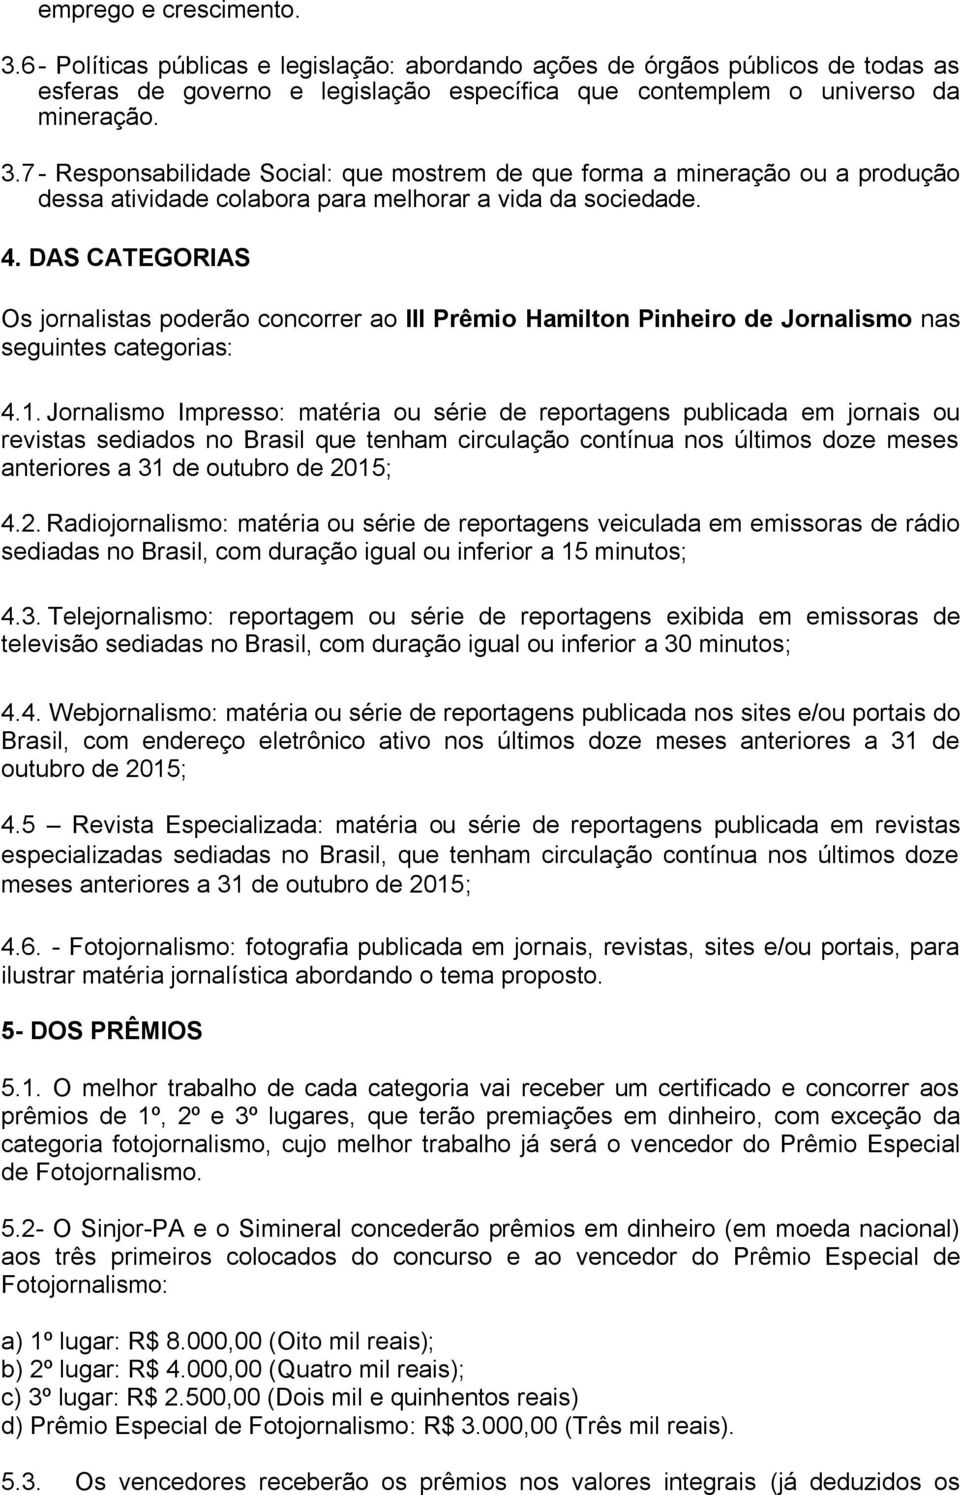 Jornalismo Impresso: matéria ou série de reportagens publicada em jornais ou revistas sediados no Brasil que tenham circulação contínua nos últimos doze meses anteriores a 31 de outubro de 20